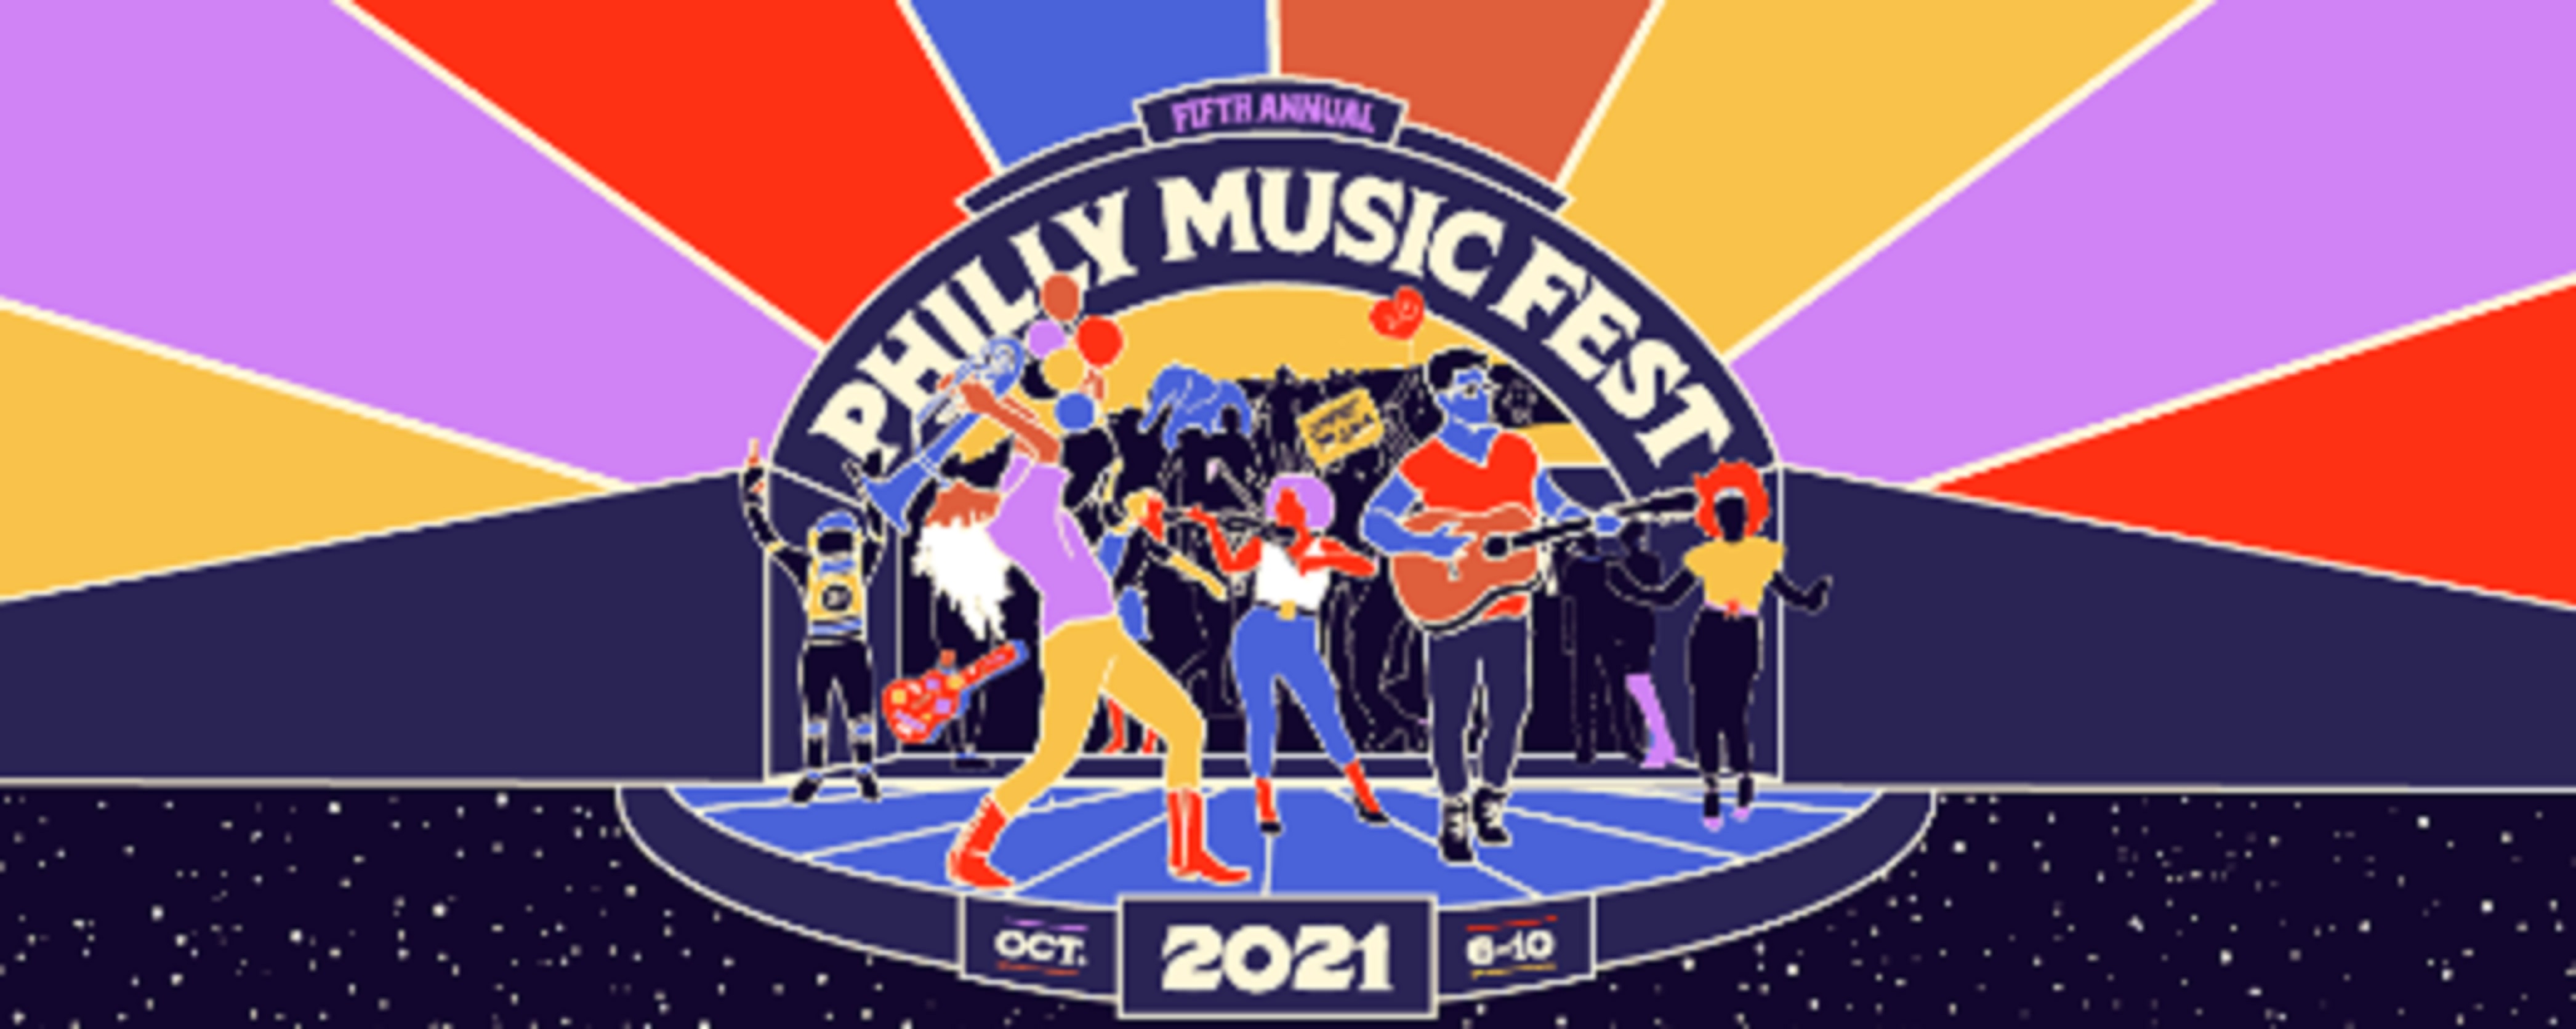 Philly Music Fest Announces 2021 Line Up, Venues & Dates Grateful Web